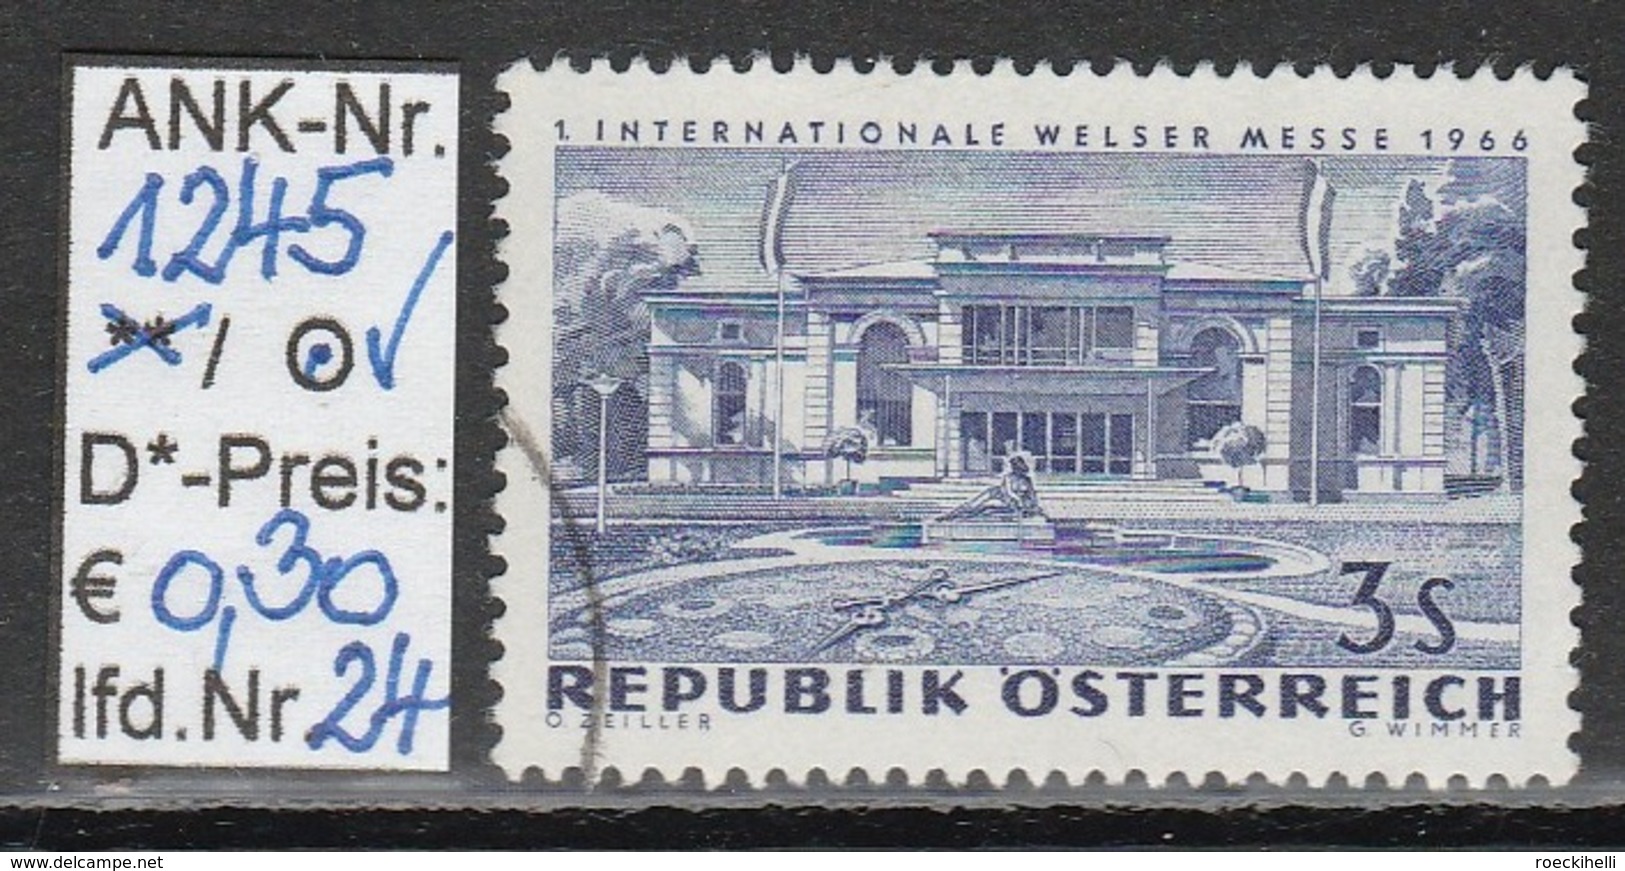 26.8.1966 - SM  "Internationale Welser Messe 1966" -  o gestempelt - siehe Scan  (1245o 01-26)